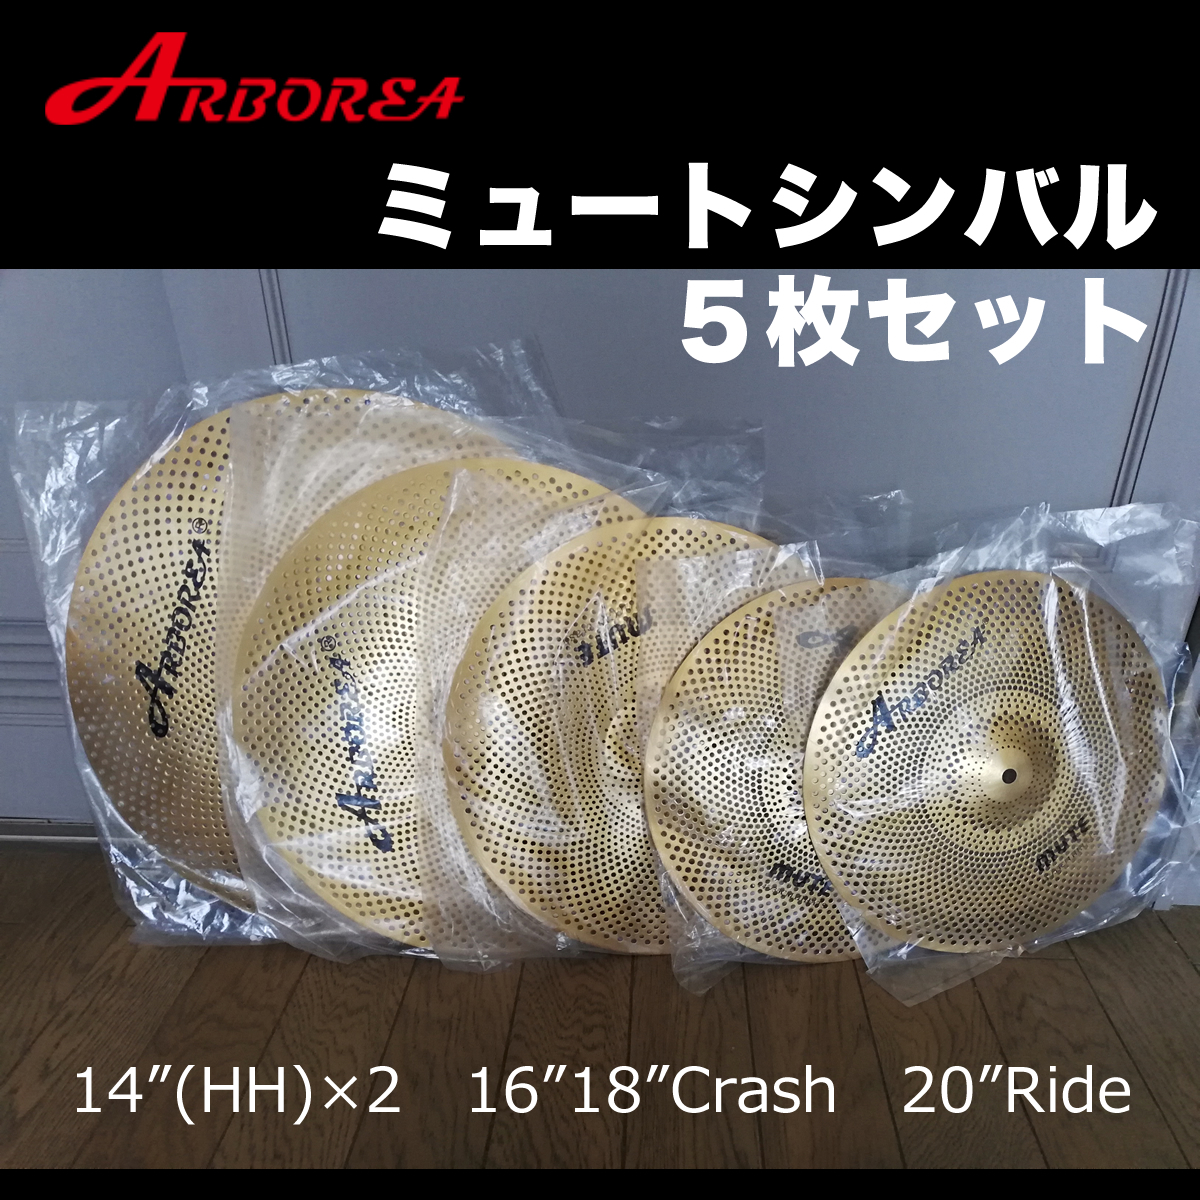 送料無料・新品] Arborea ミュートシンバル/ゴールド 5枚組 14HH/16C